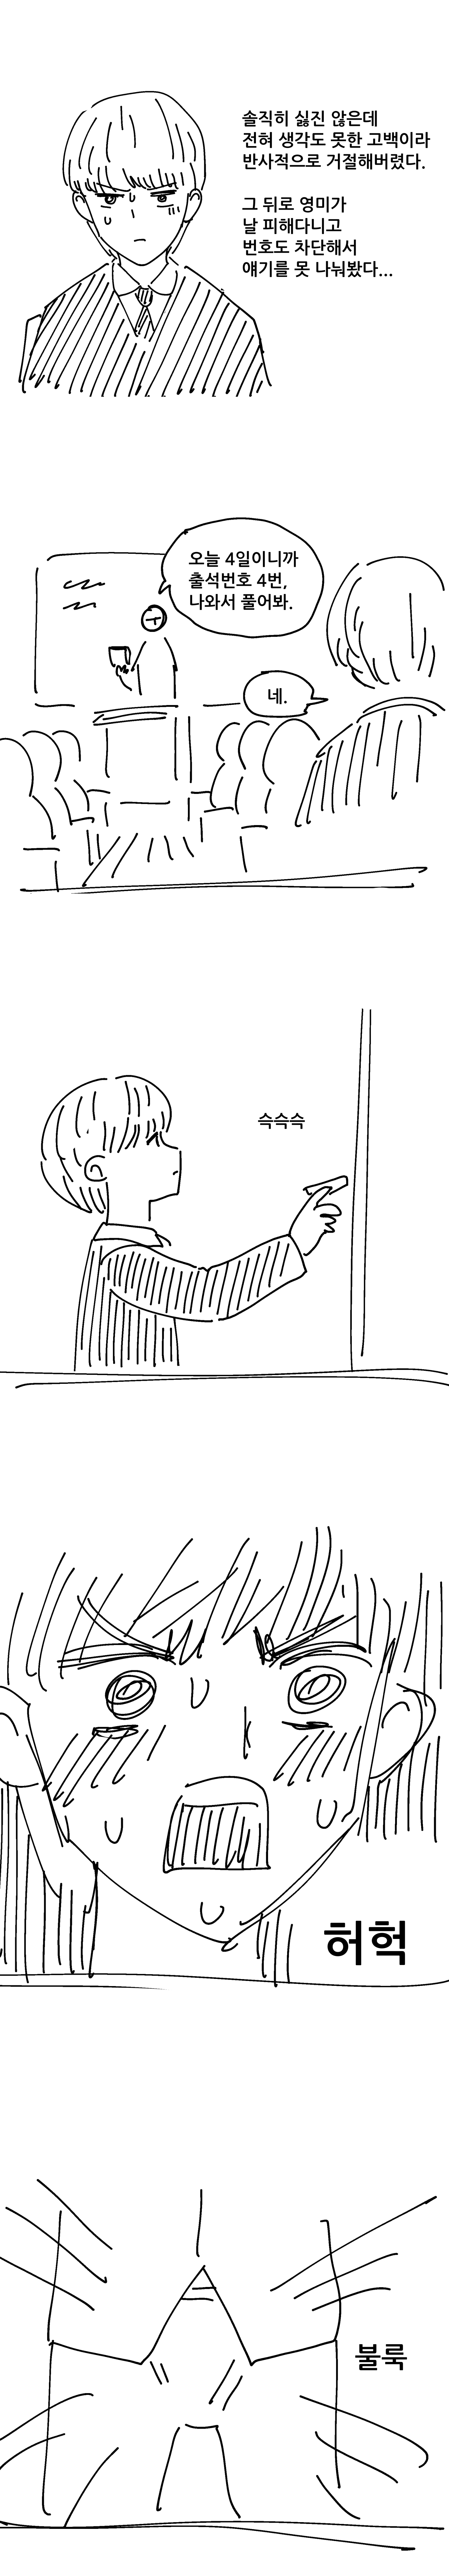 후방) 초능력 소꿉친구에게 수업 중 능욕당하는 만화.manhwa